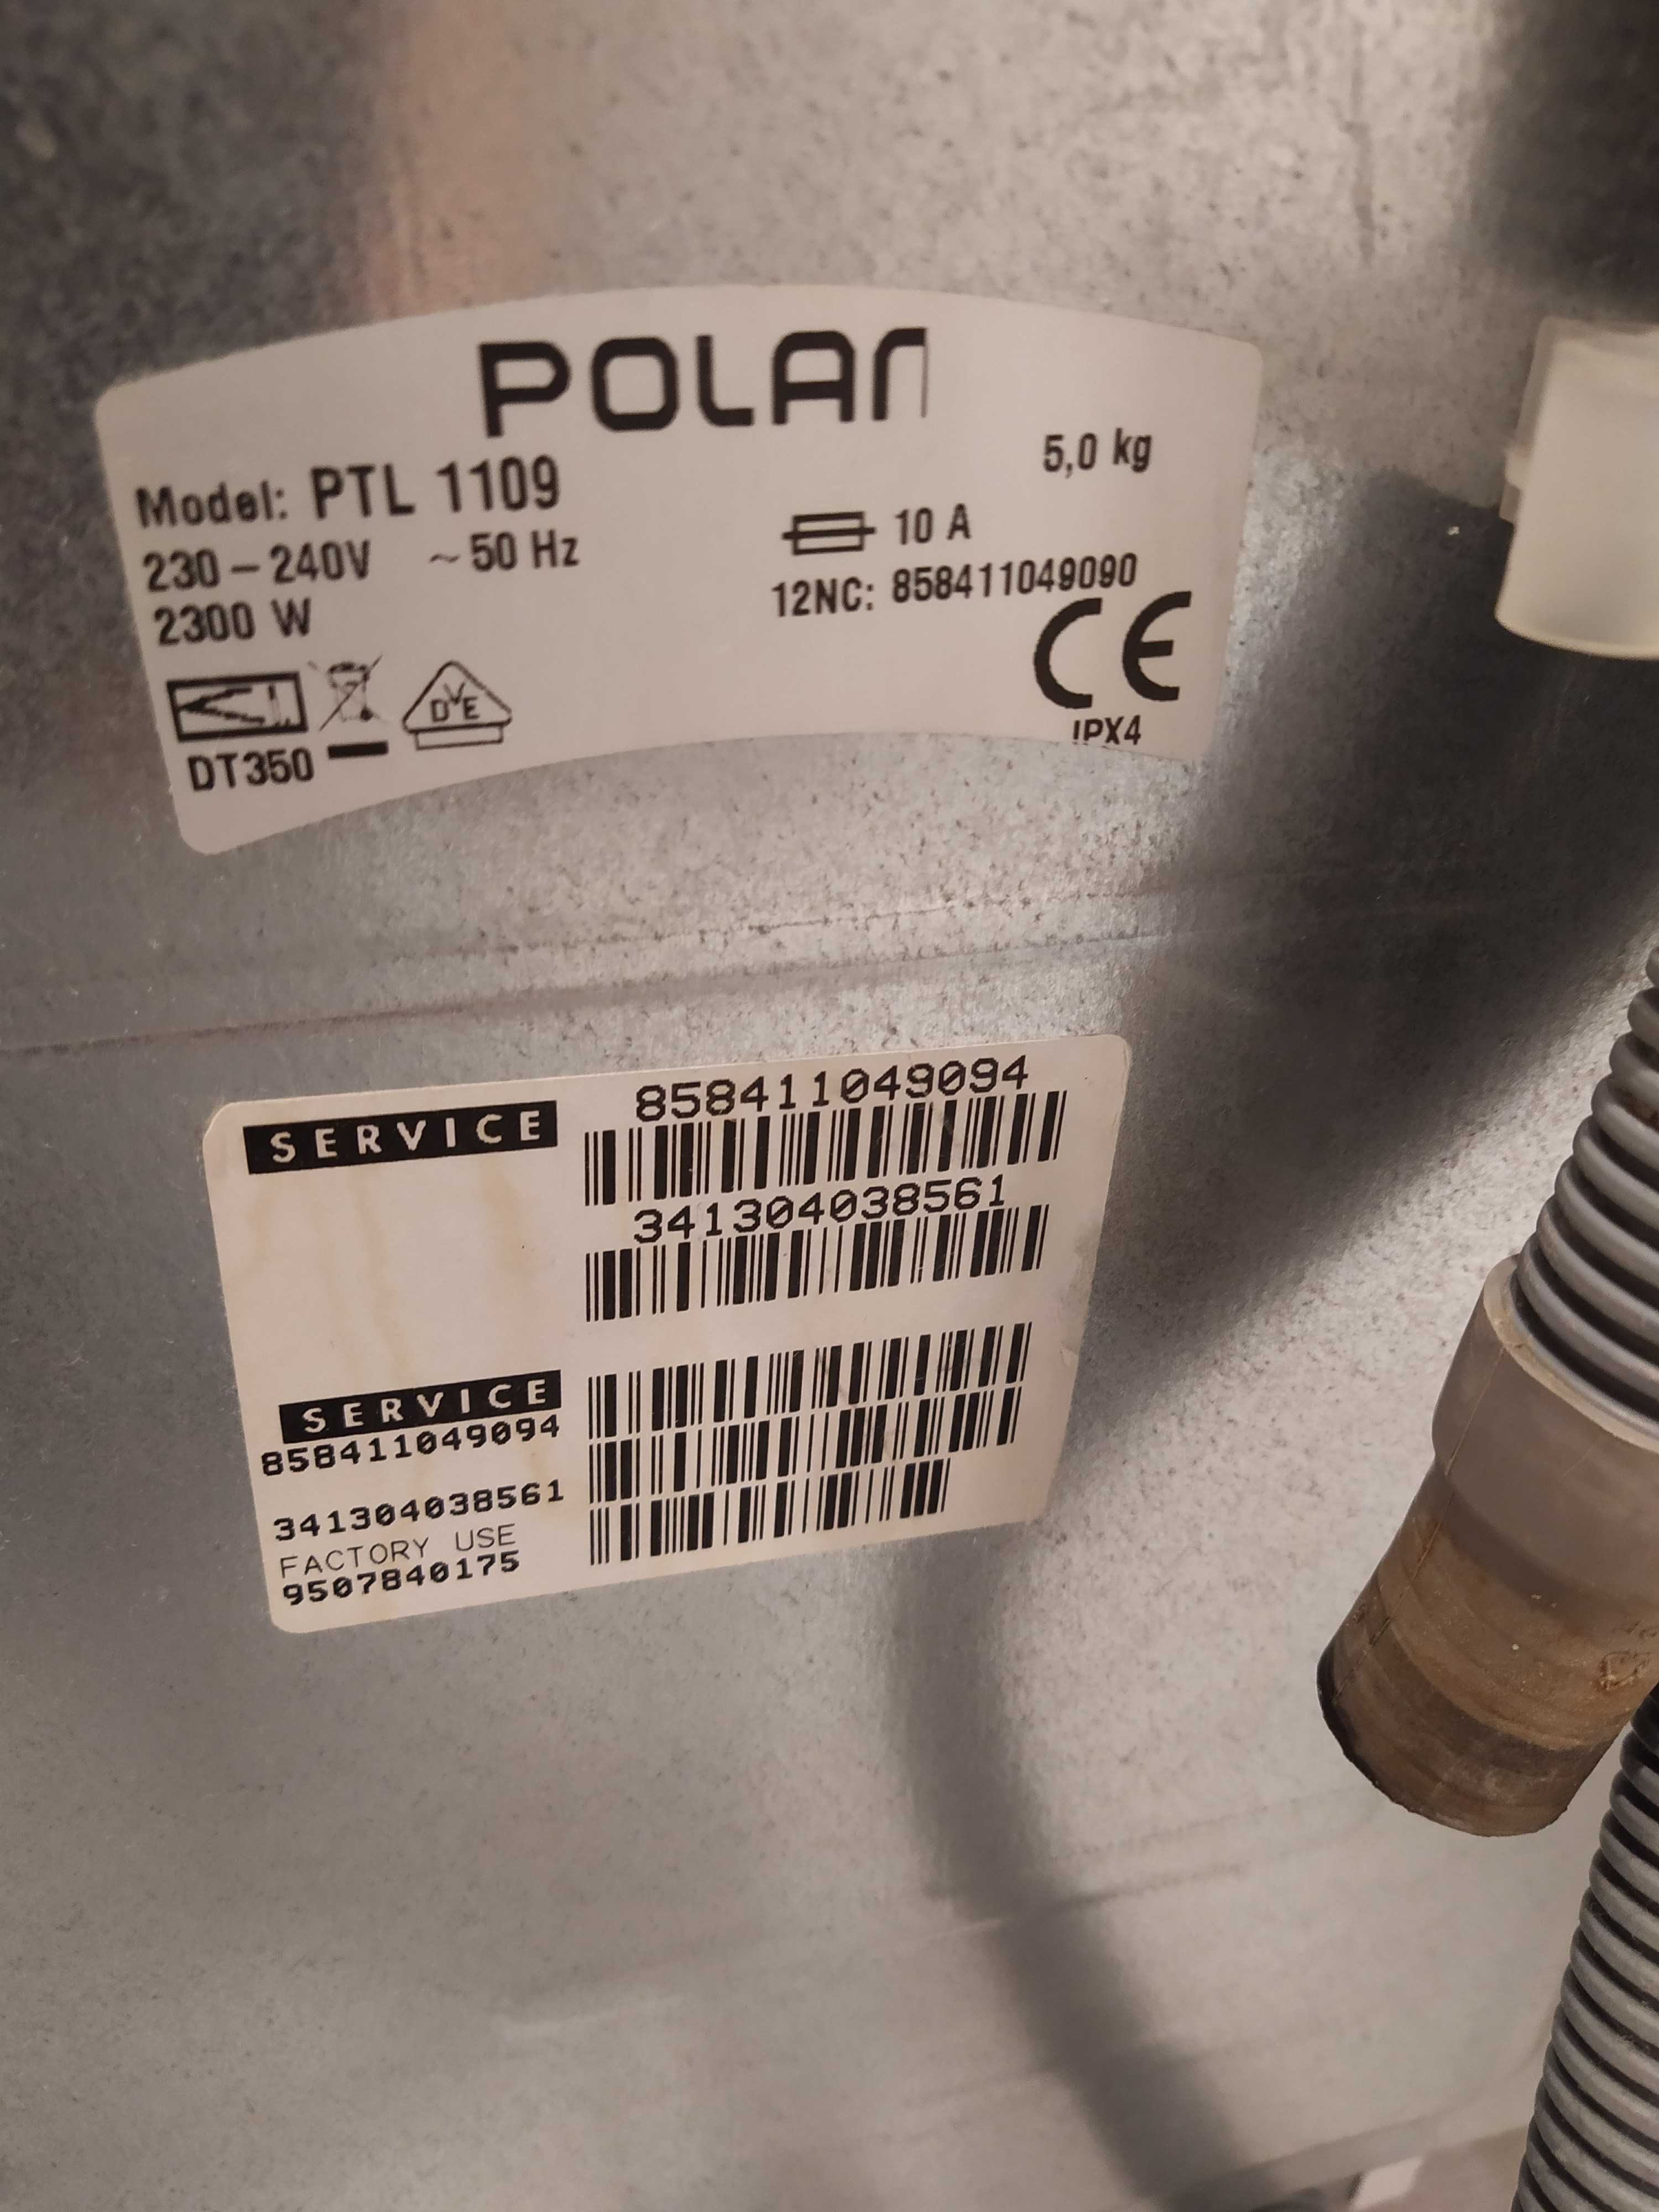 Okazja palka POLAR PTL 1109 5kg ładowana od góry - uszkodzony programa